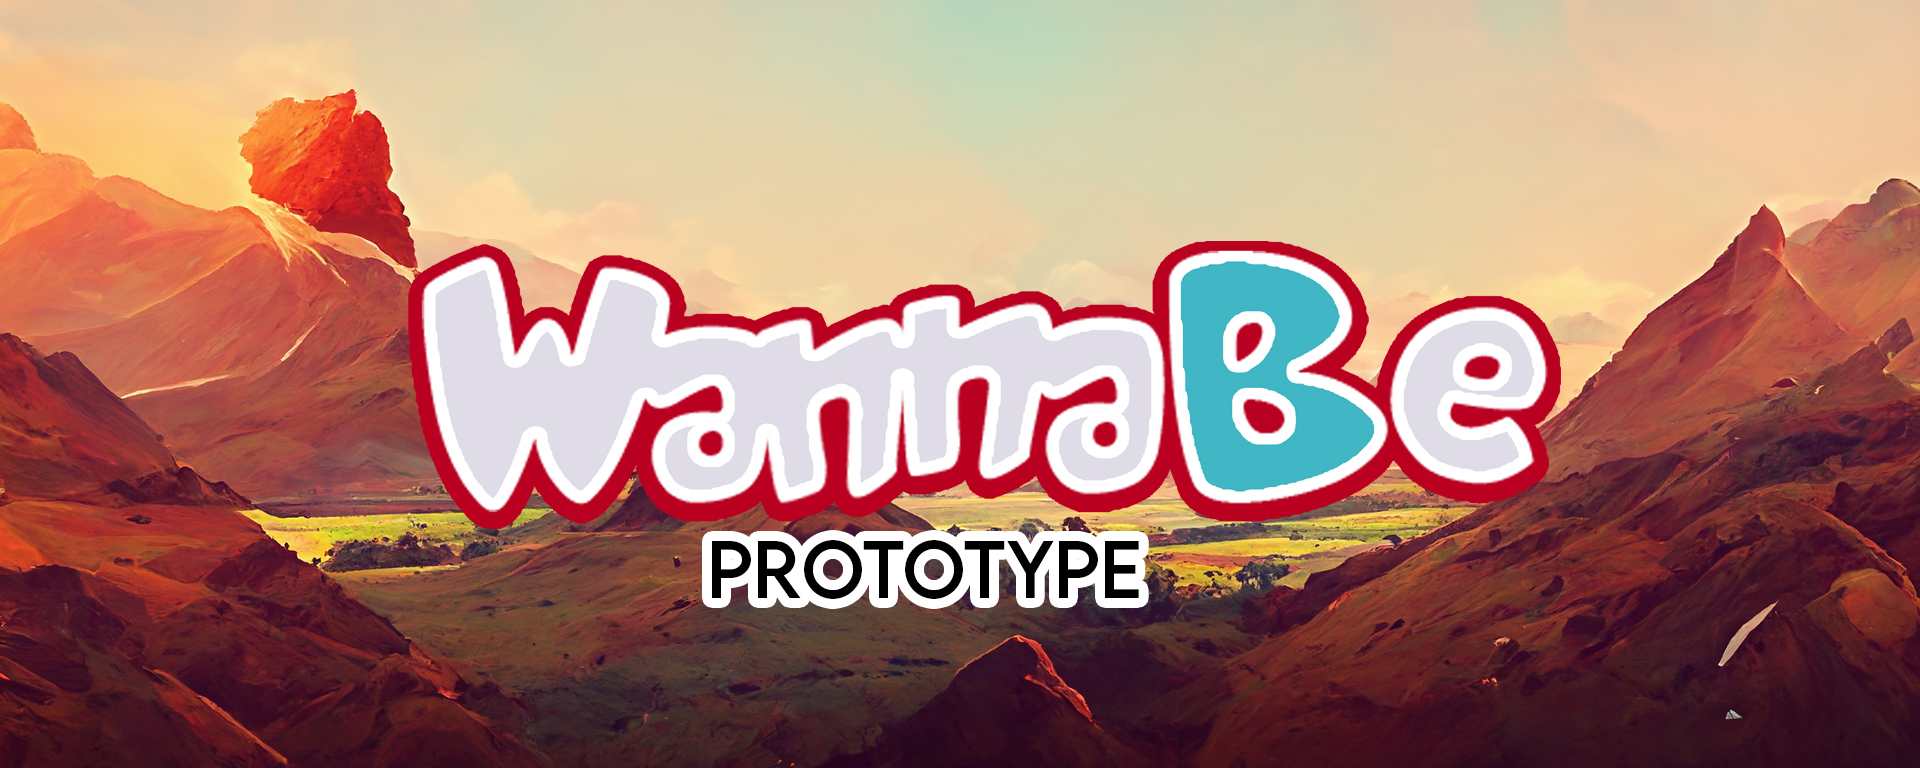 WannaBe - Prototype